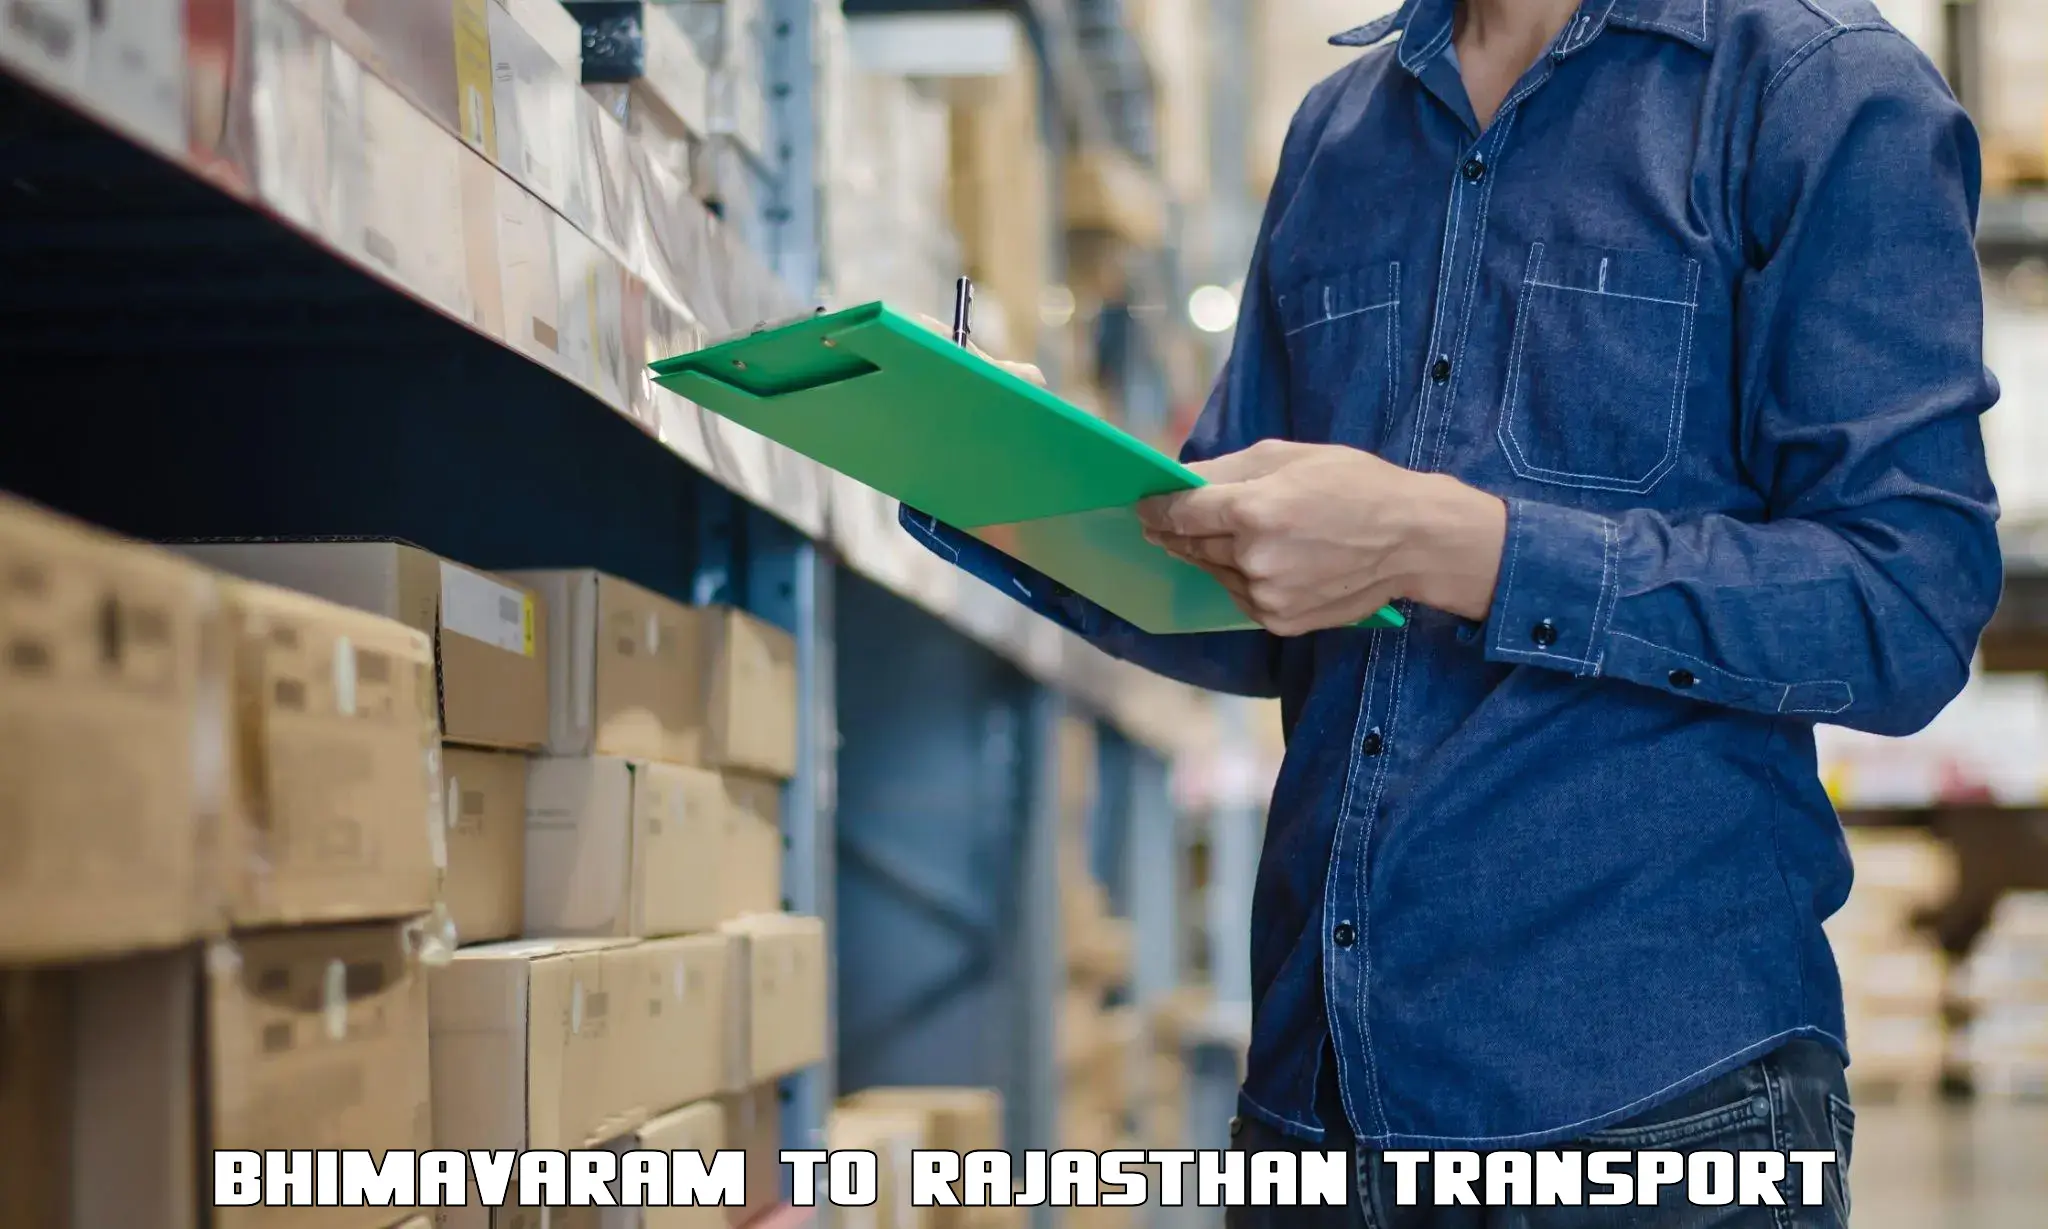 Parcel transport services Bhimavaram to Jaipur